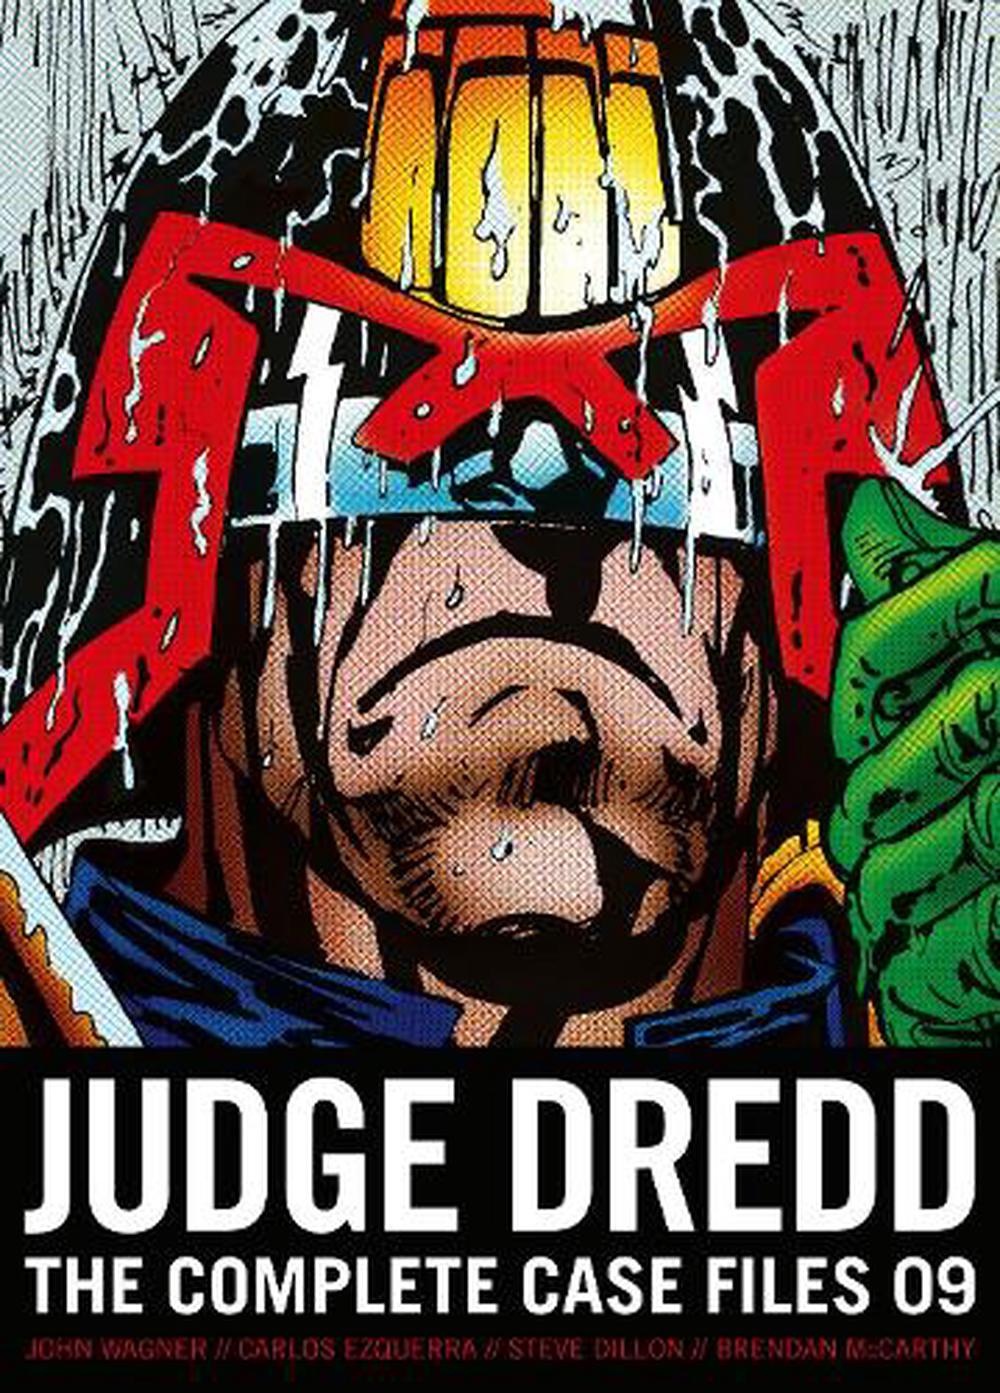 download judge dredd complete case files list